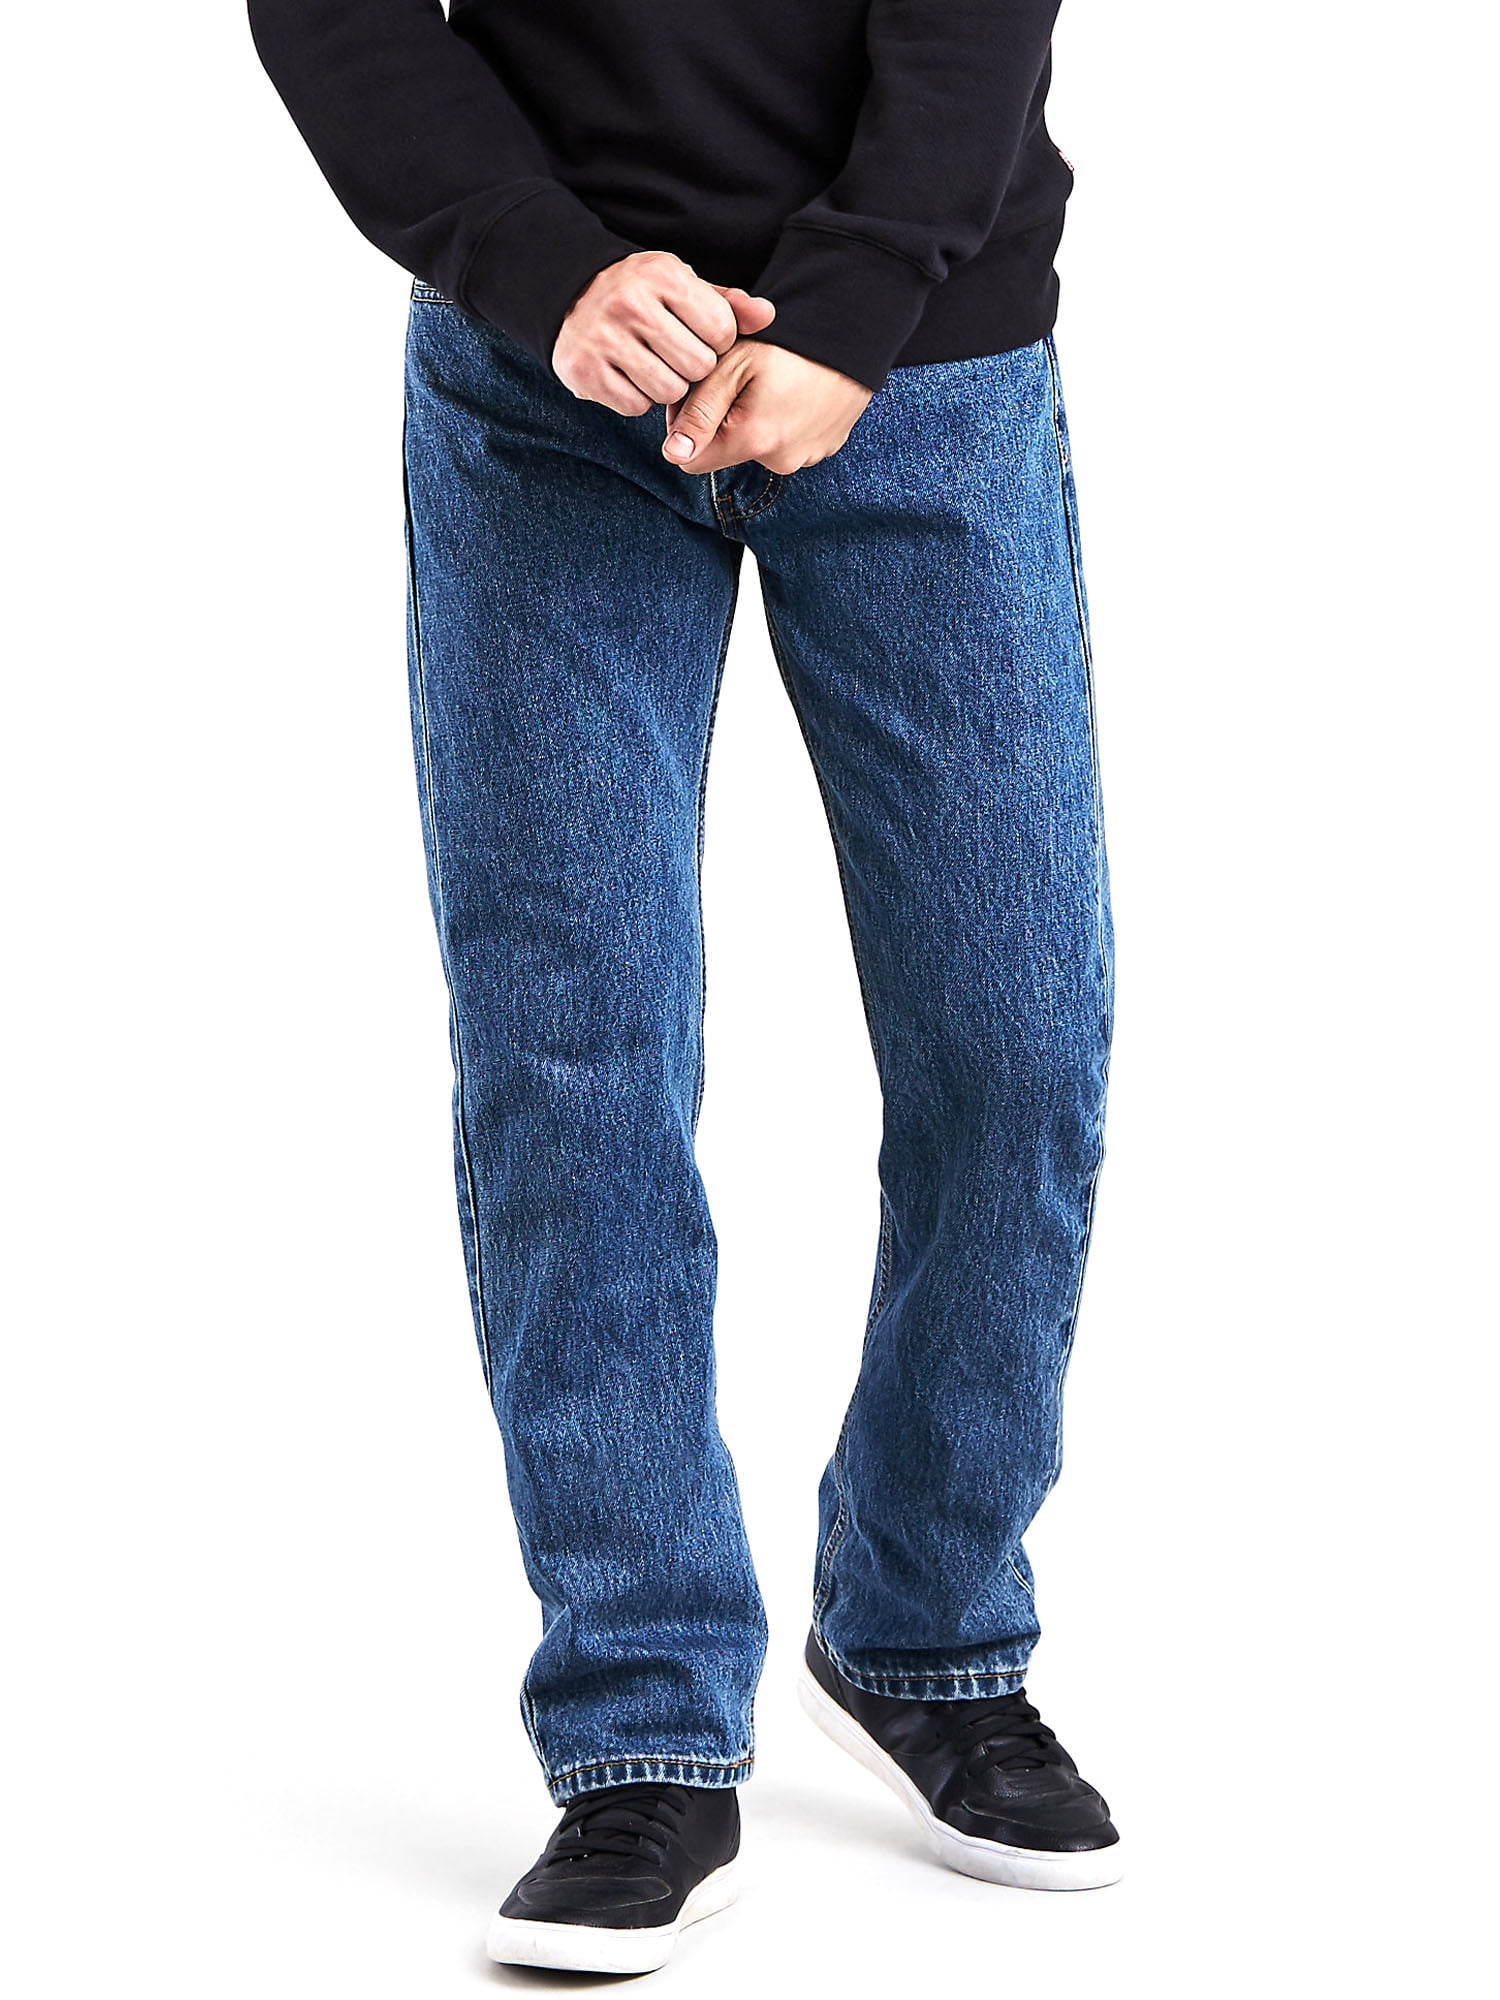 Obsessie Kritiek ik ben trots Levi's Men's 505 Regular Fit Jeans - Walmart.com